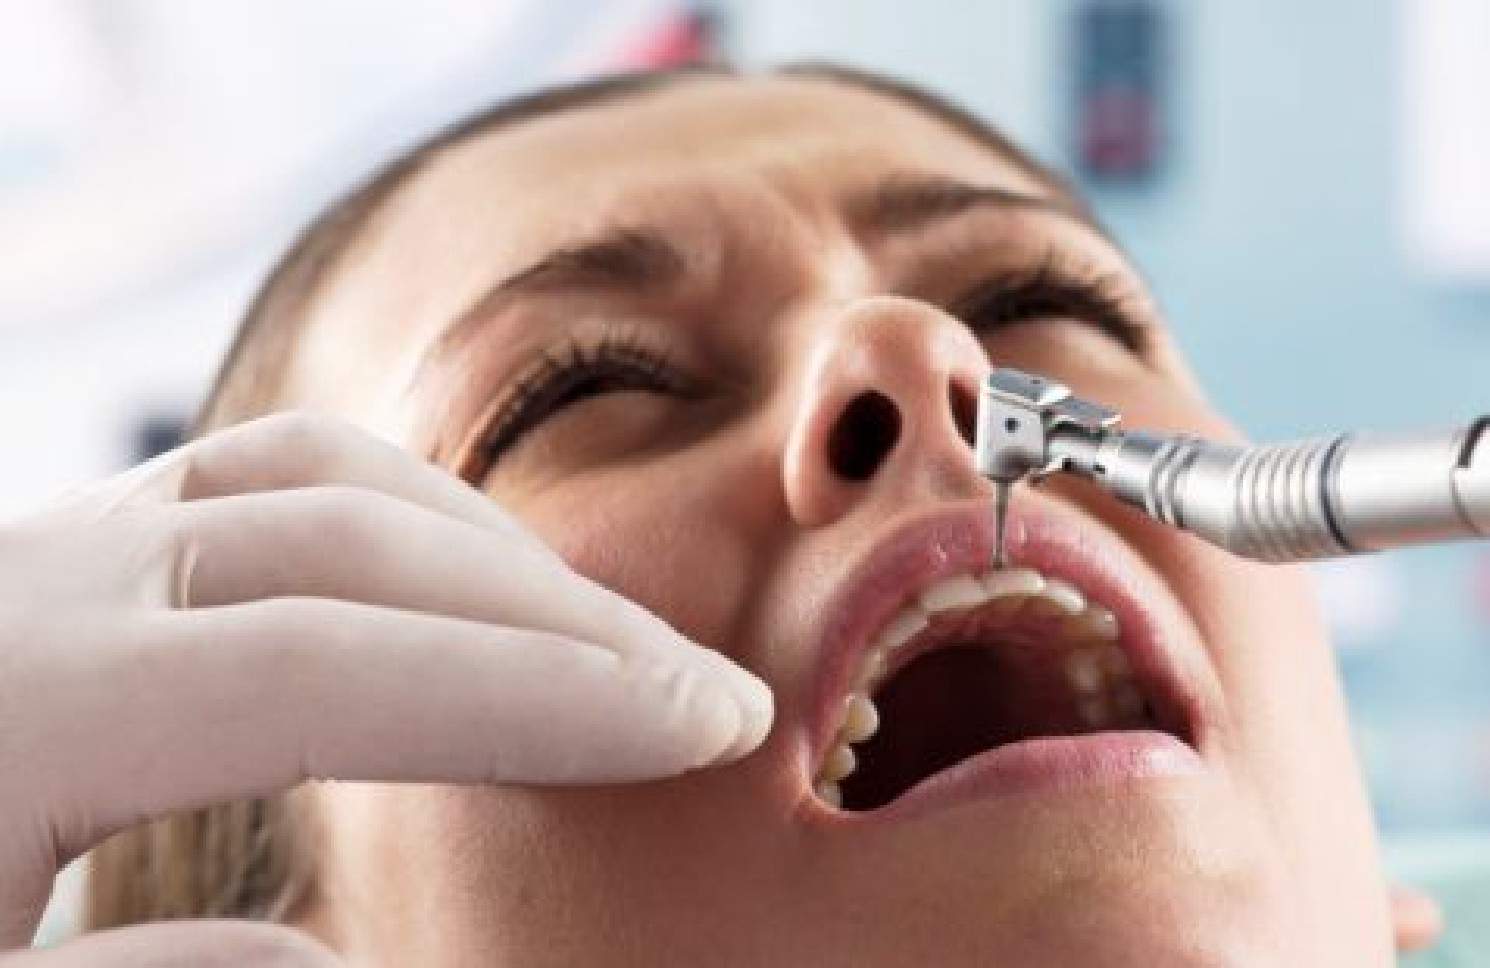 Боюсь анестезии. Укол в Десну у стоматолога. Бормашина зубная. Стоматолог сверлит зуб.